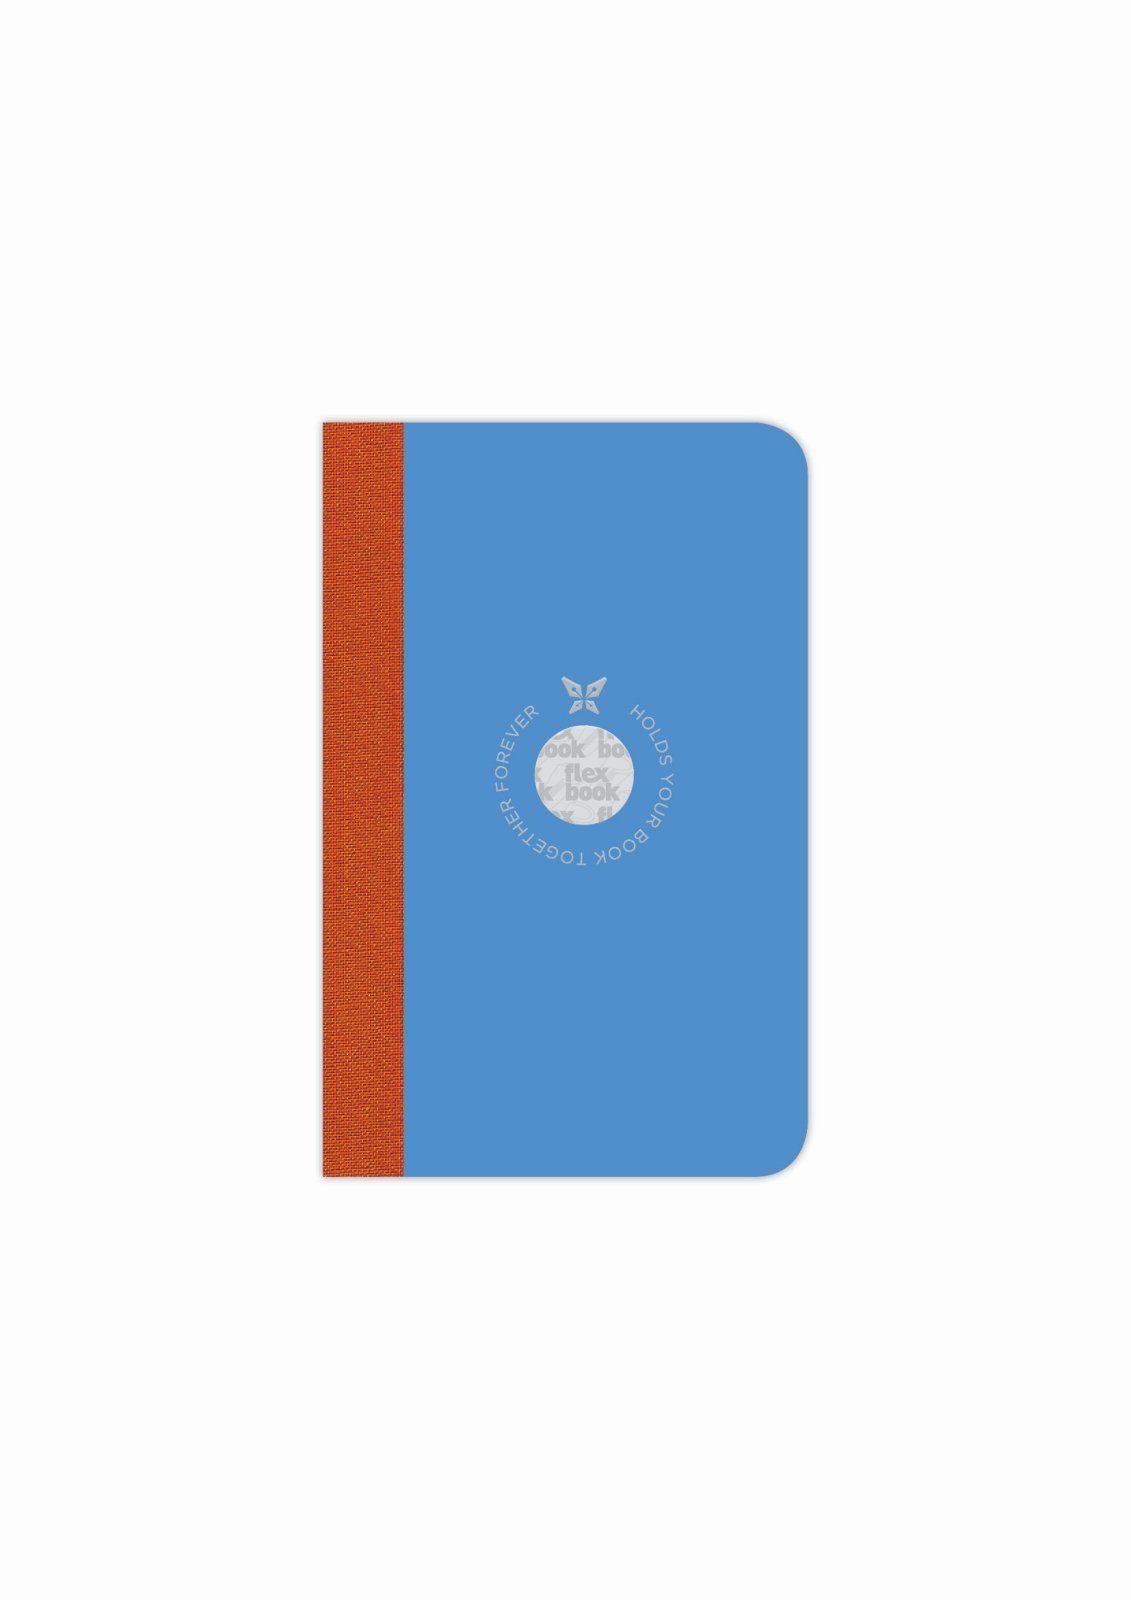 Flexbook Notizbuch Flexbook Smartbook Liniert 160 Seiten Ökopapiereinband viele Größen/Fa Blau 9*14cm